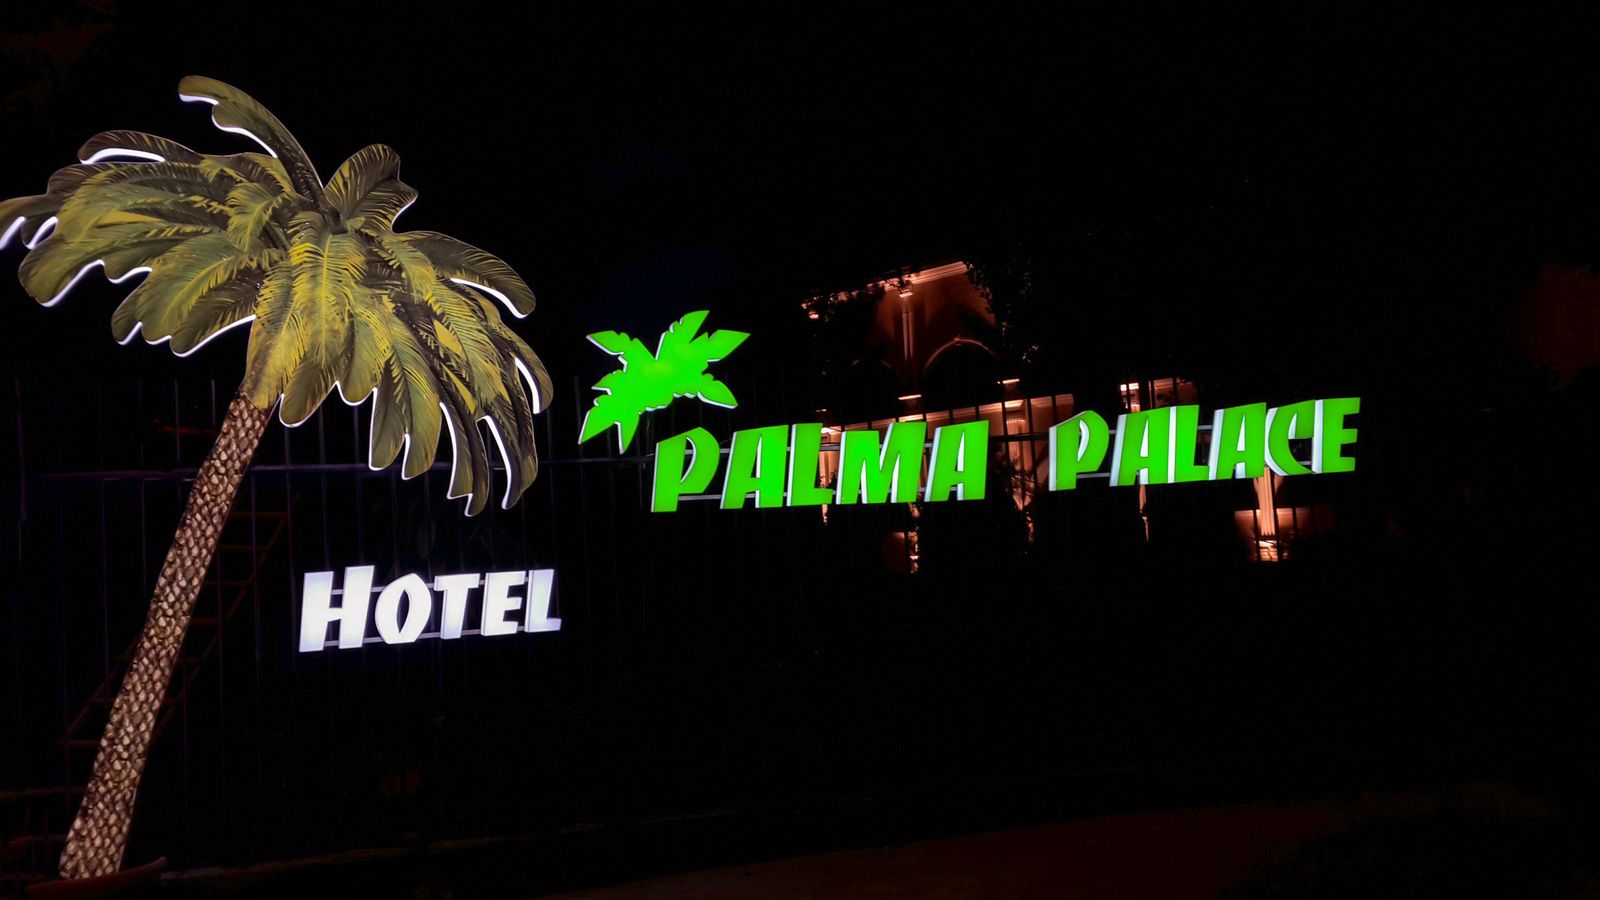 palma palace hotel illuminated logo signage